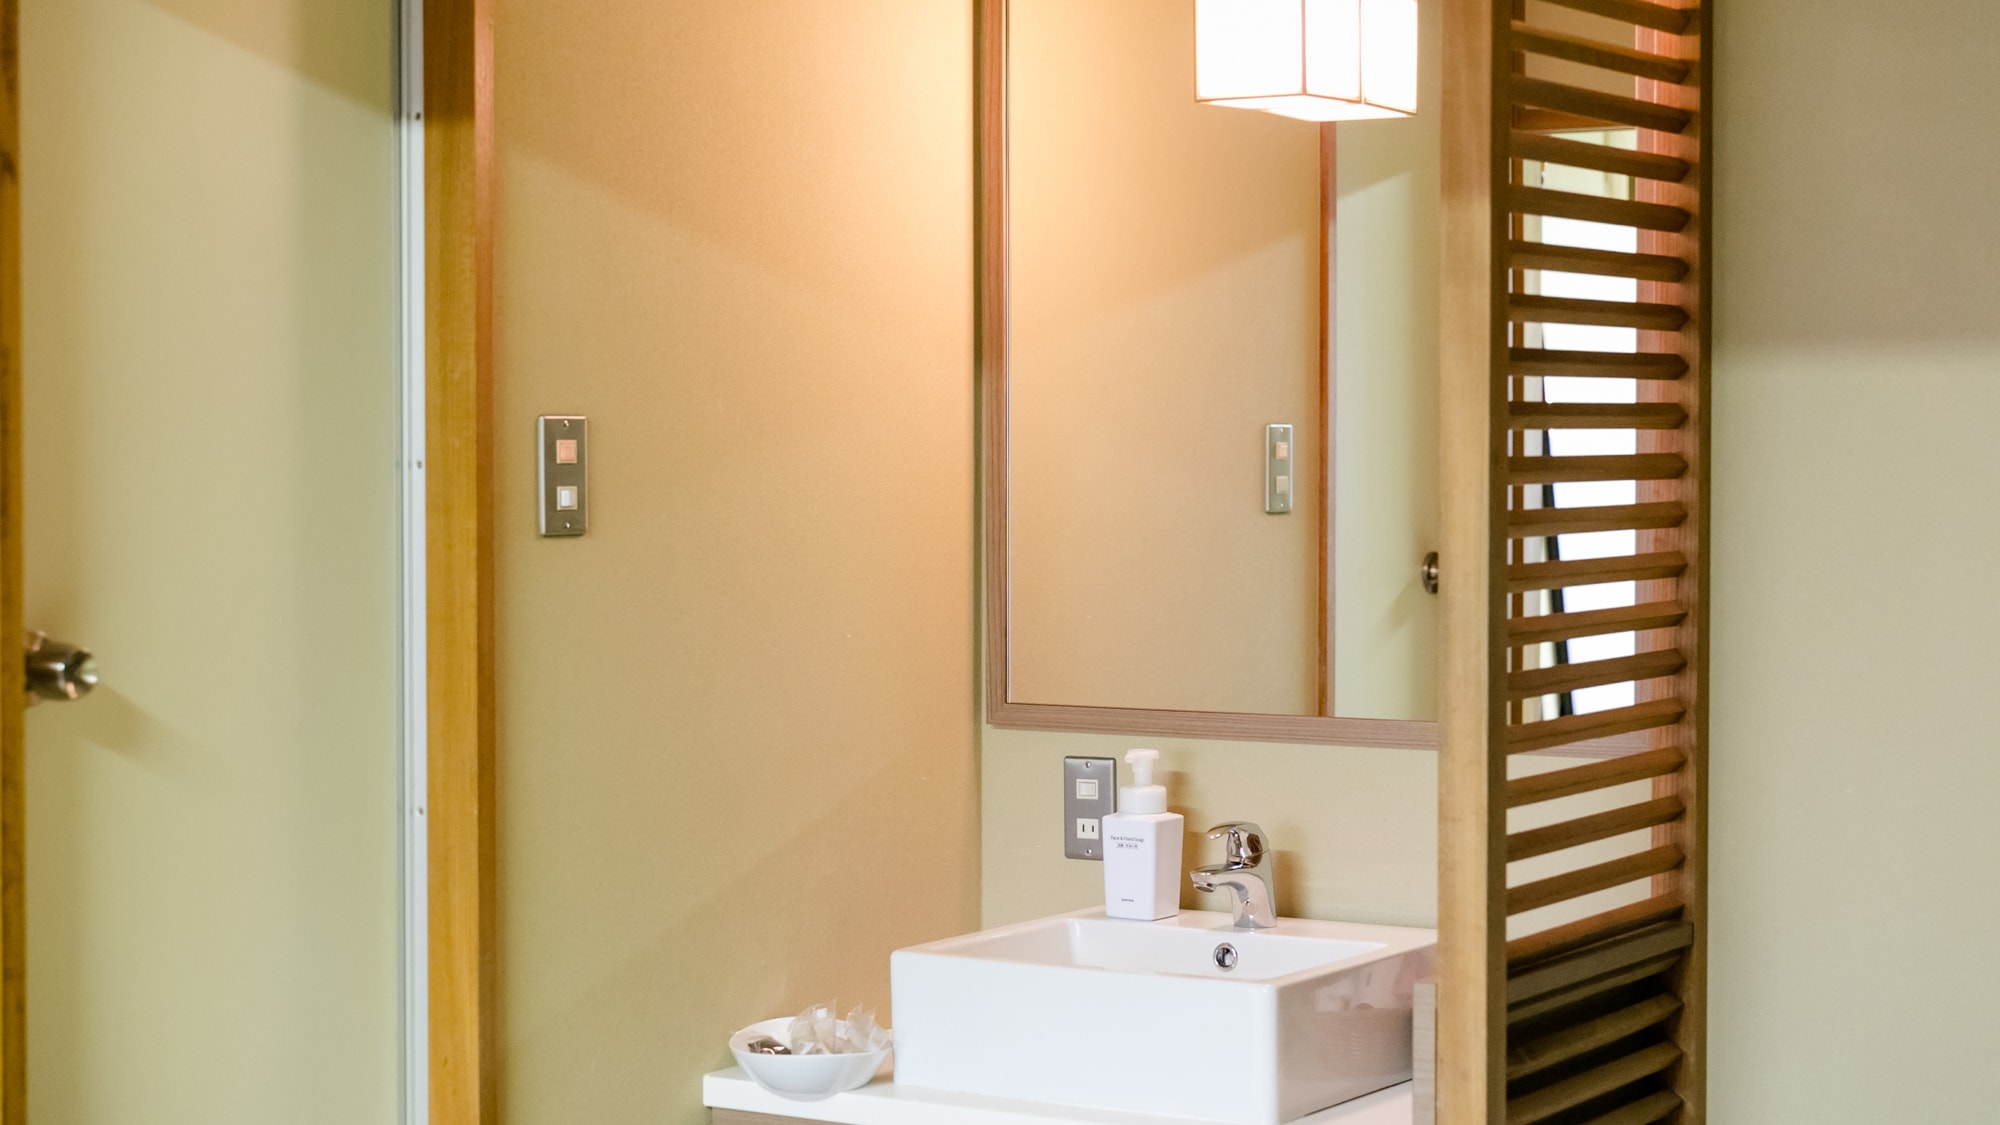 Kamar bergaya Jepang 10 tikar tatami (kamar kecil) Tanpa bak mandi